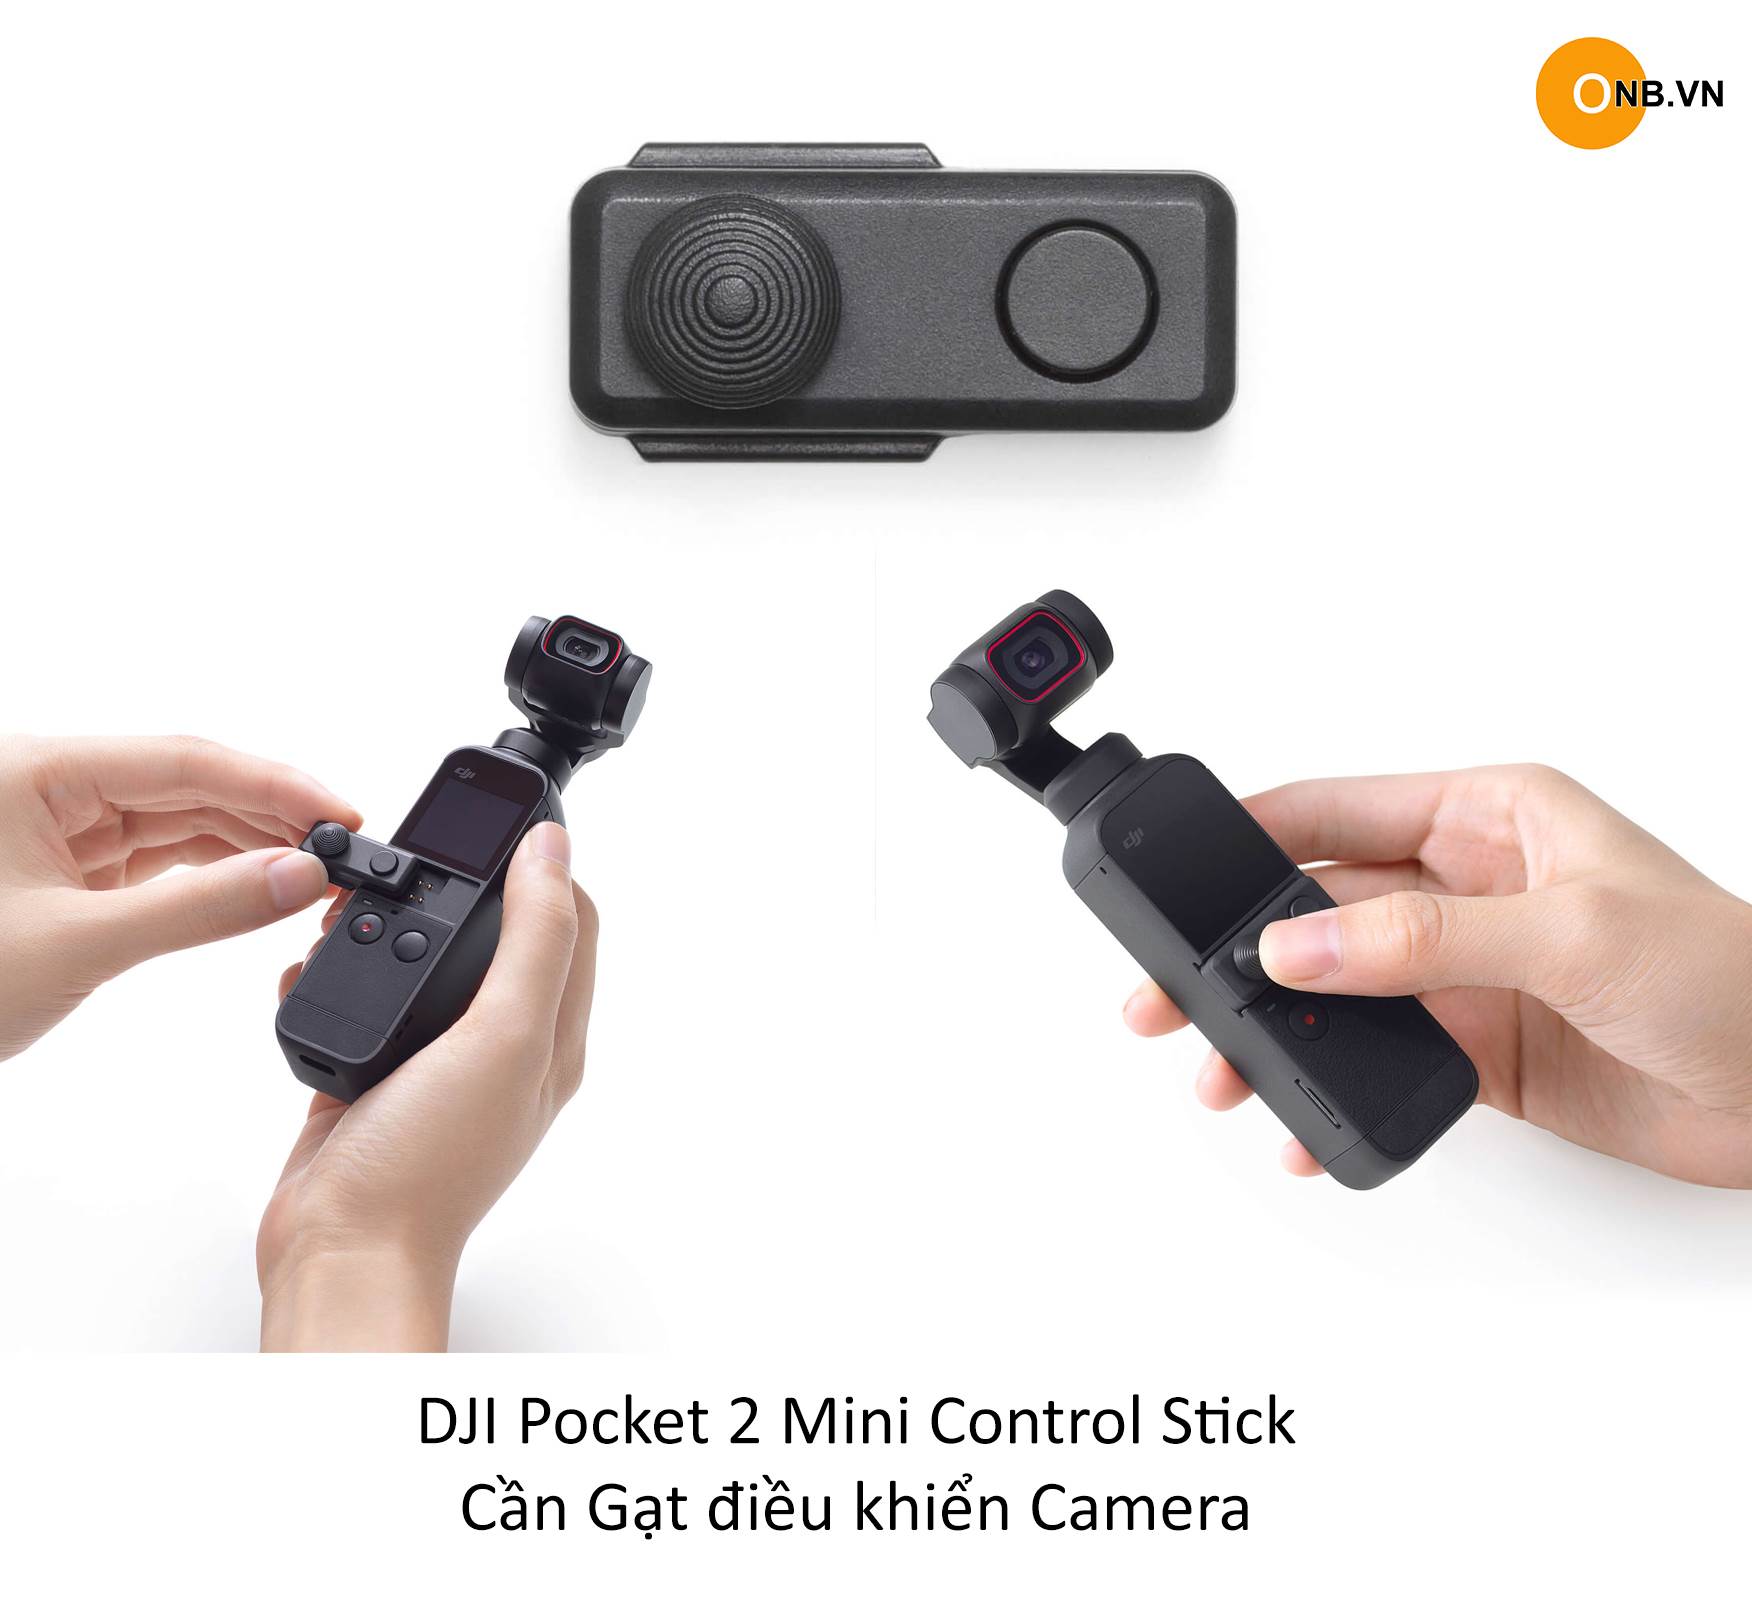 DJI Pocket 2 Mini Control Stick - Cần gạt điều khiển camera